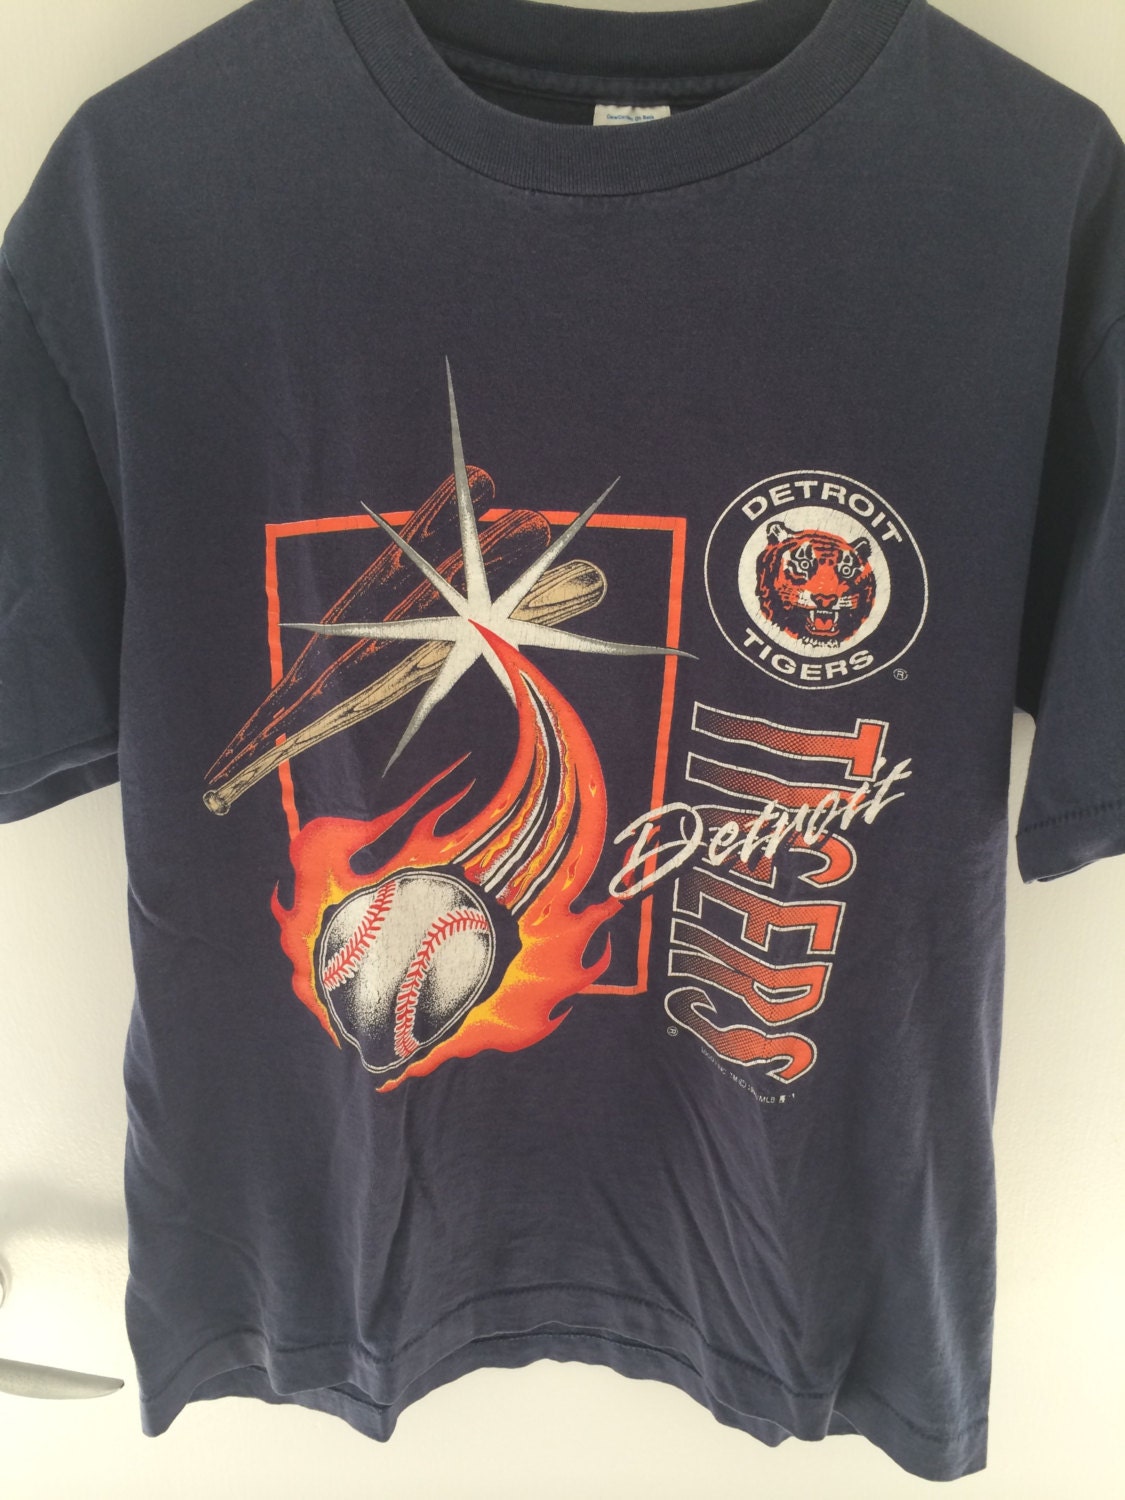 Vintage 1993 Detroit Tigers T-shirt